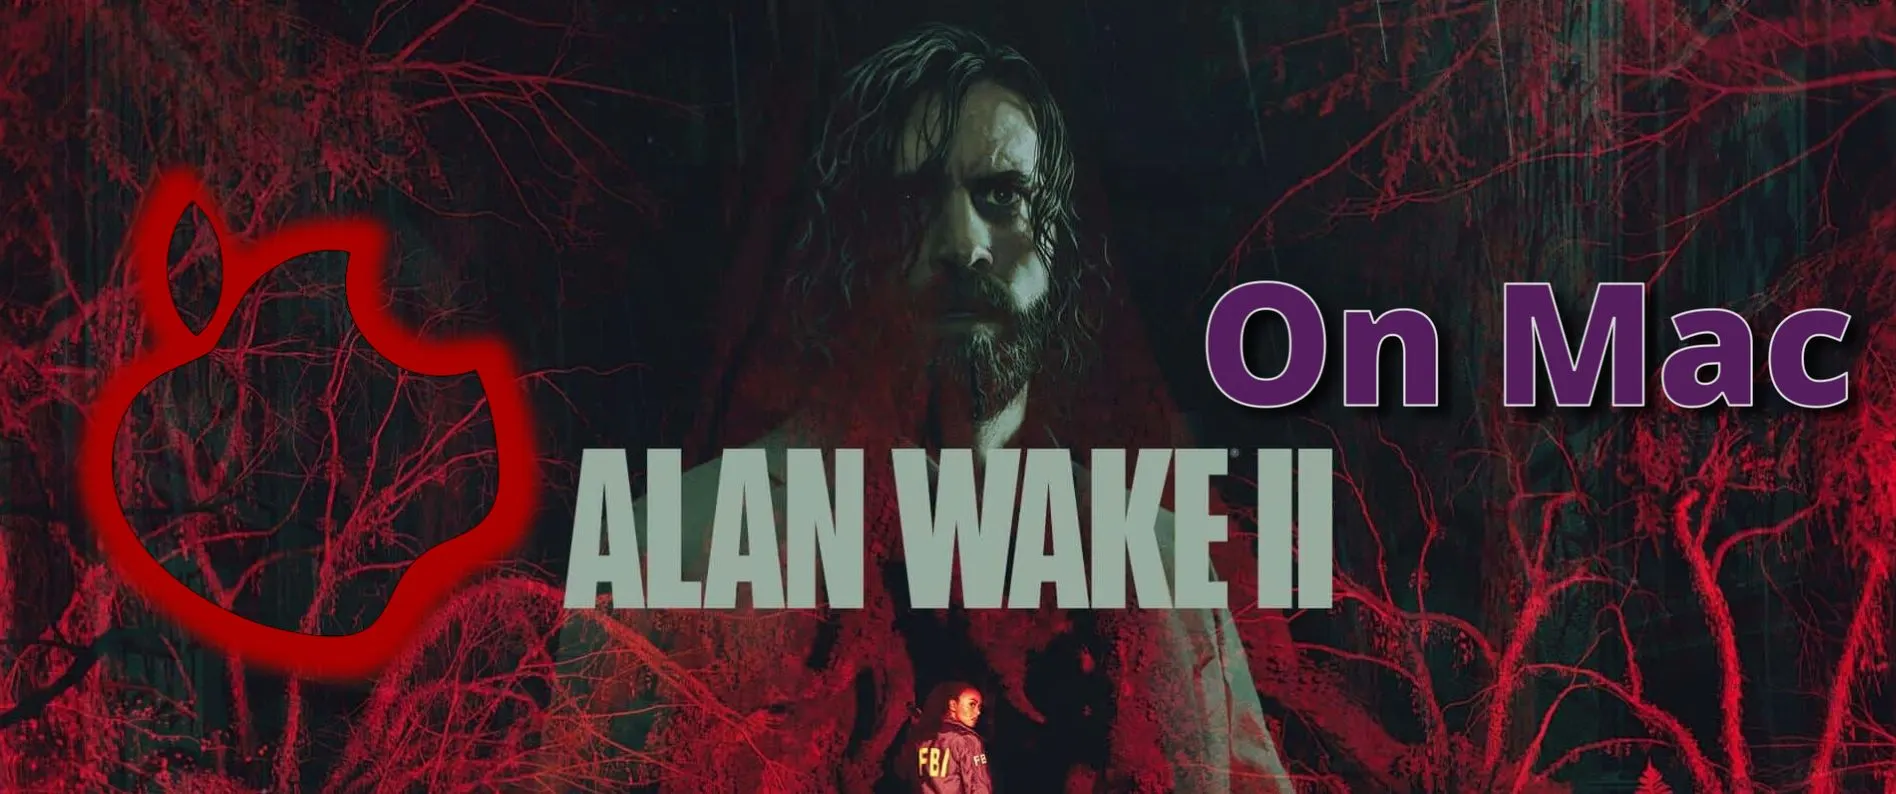 Alan Wake 2 on Mac